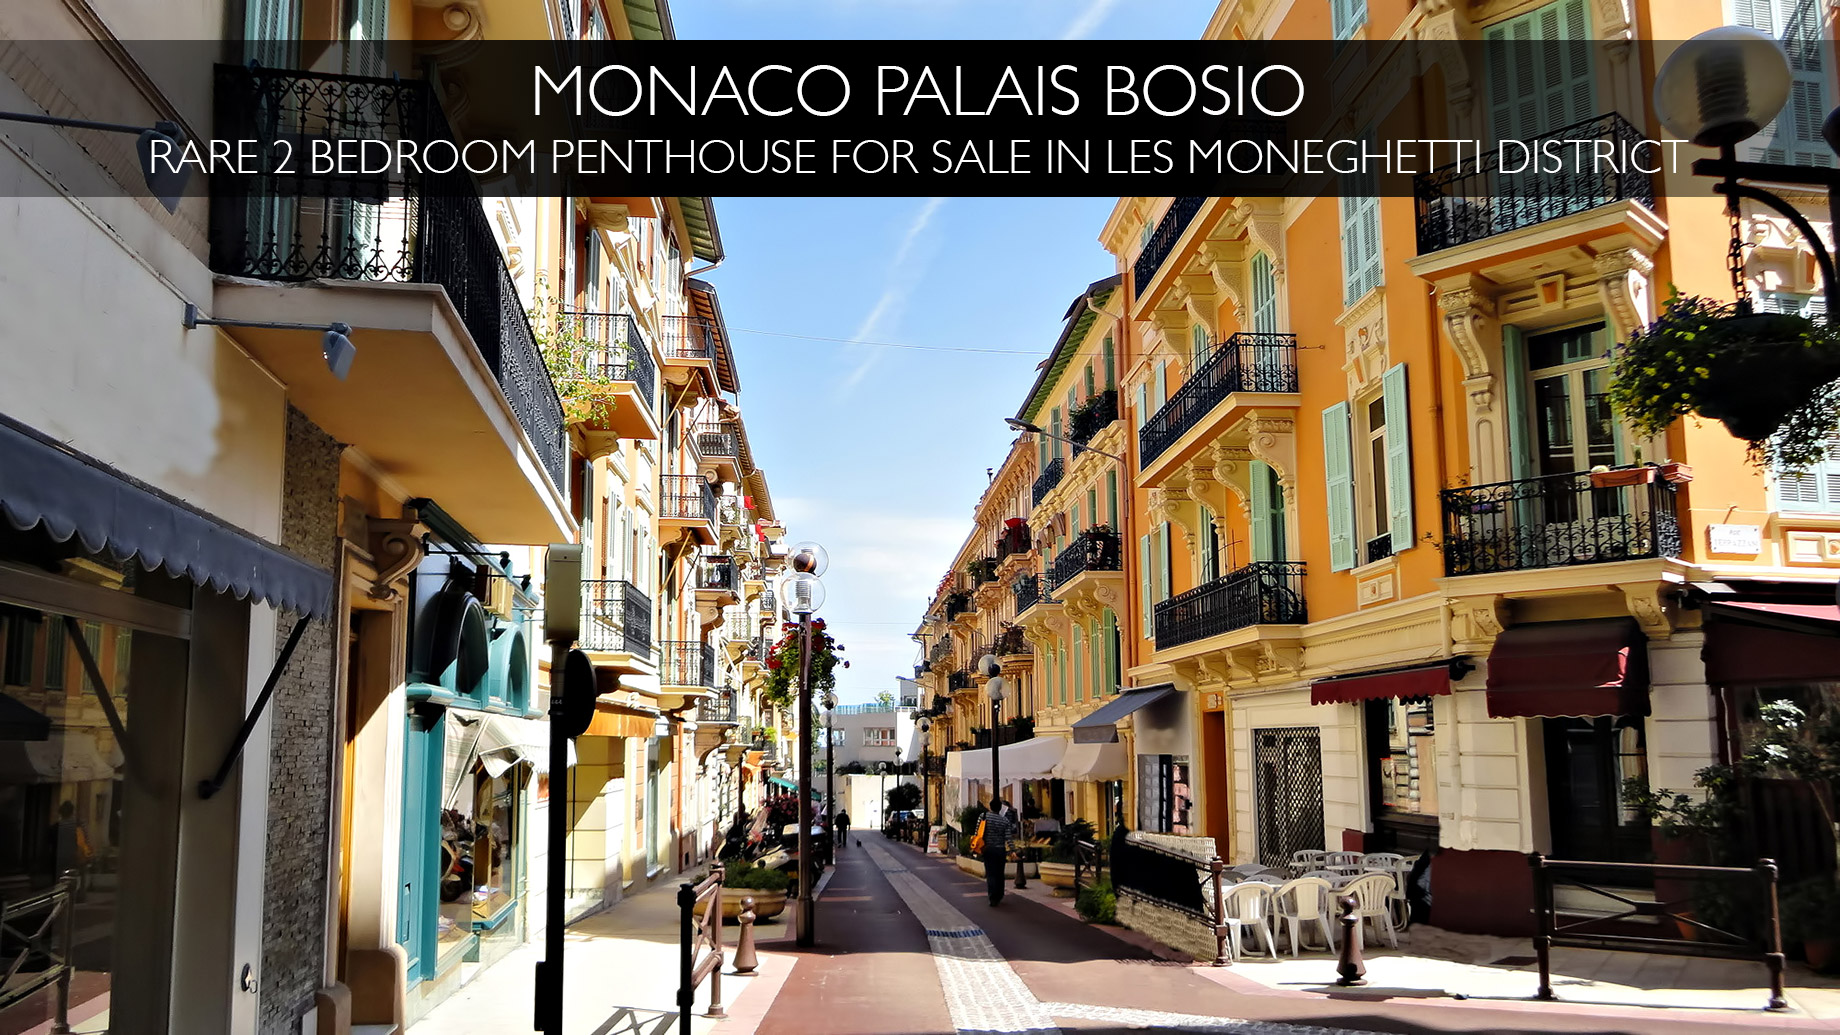 Monaco Palais Bosio - Rare 2 Bedroom Penthouse in Les Moneghetti District